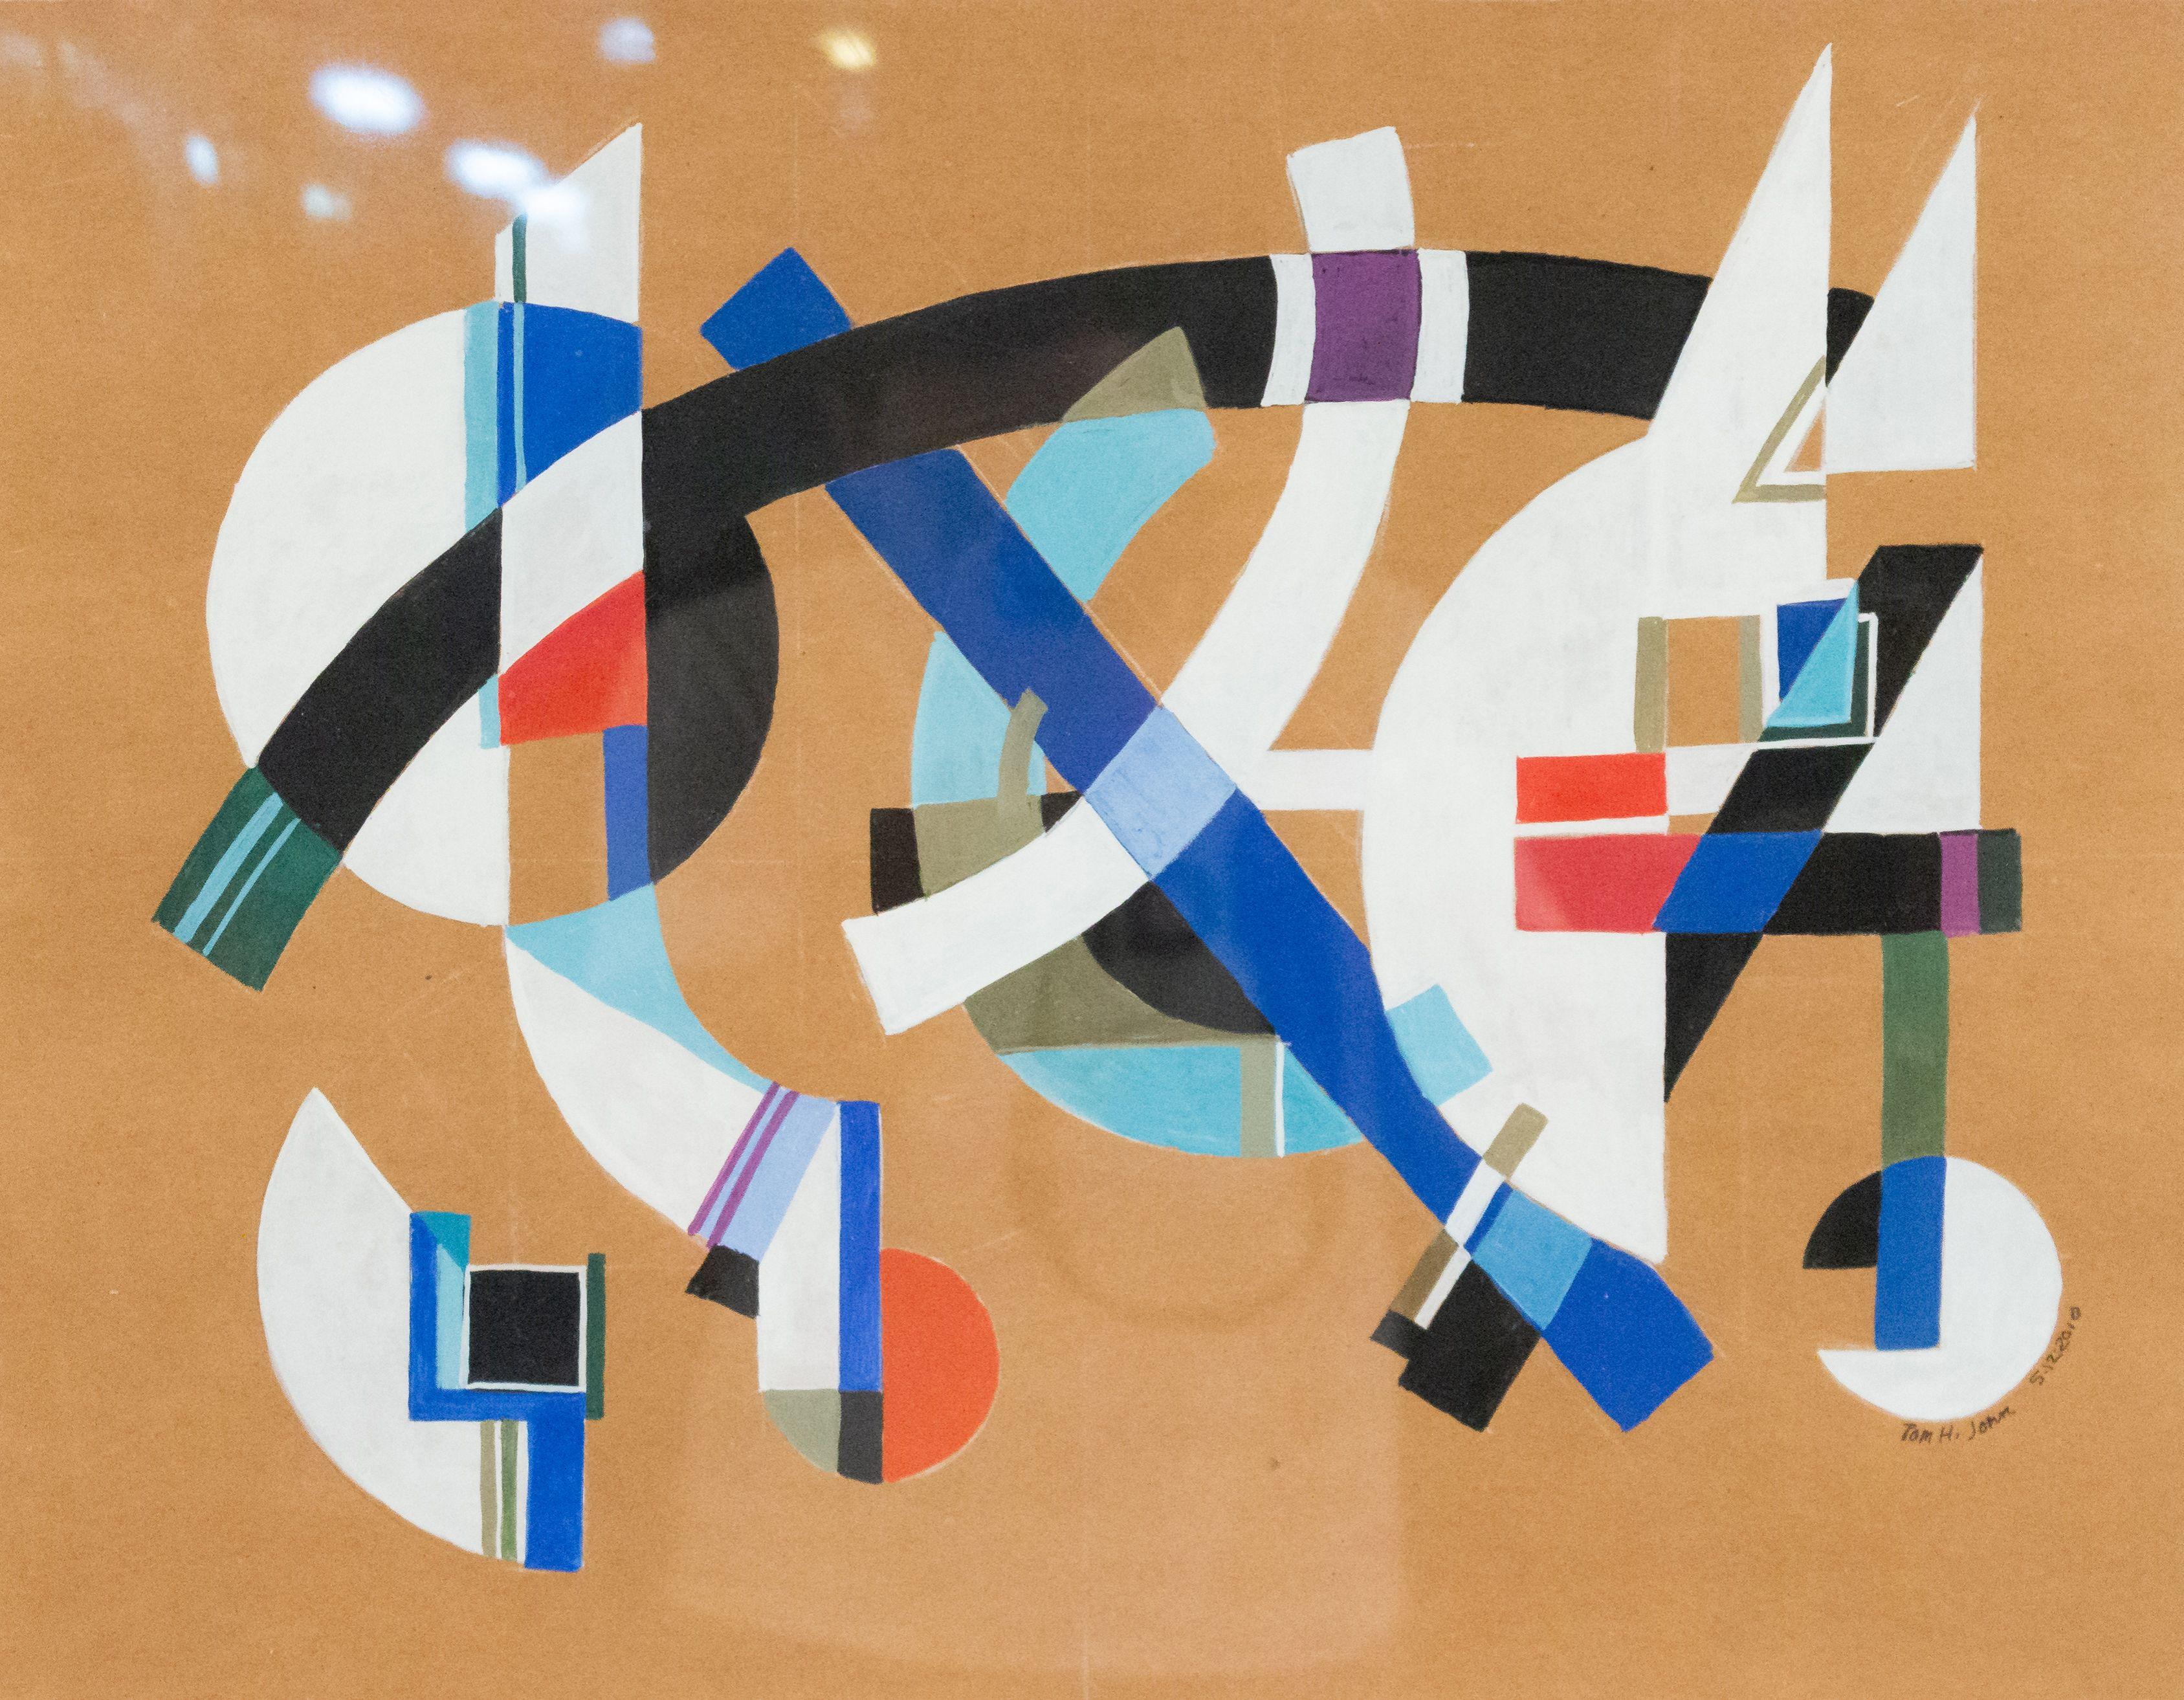 Zeitgenössisches abstraktes Gemälde in Gouache und Bleistift auf Papier in einem schwarzen rechteckigen Rahmen (TOM JOHN, 2010).
 